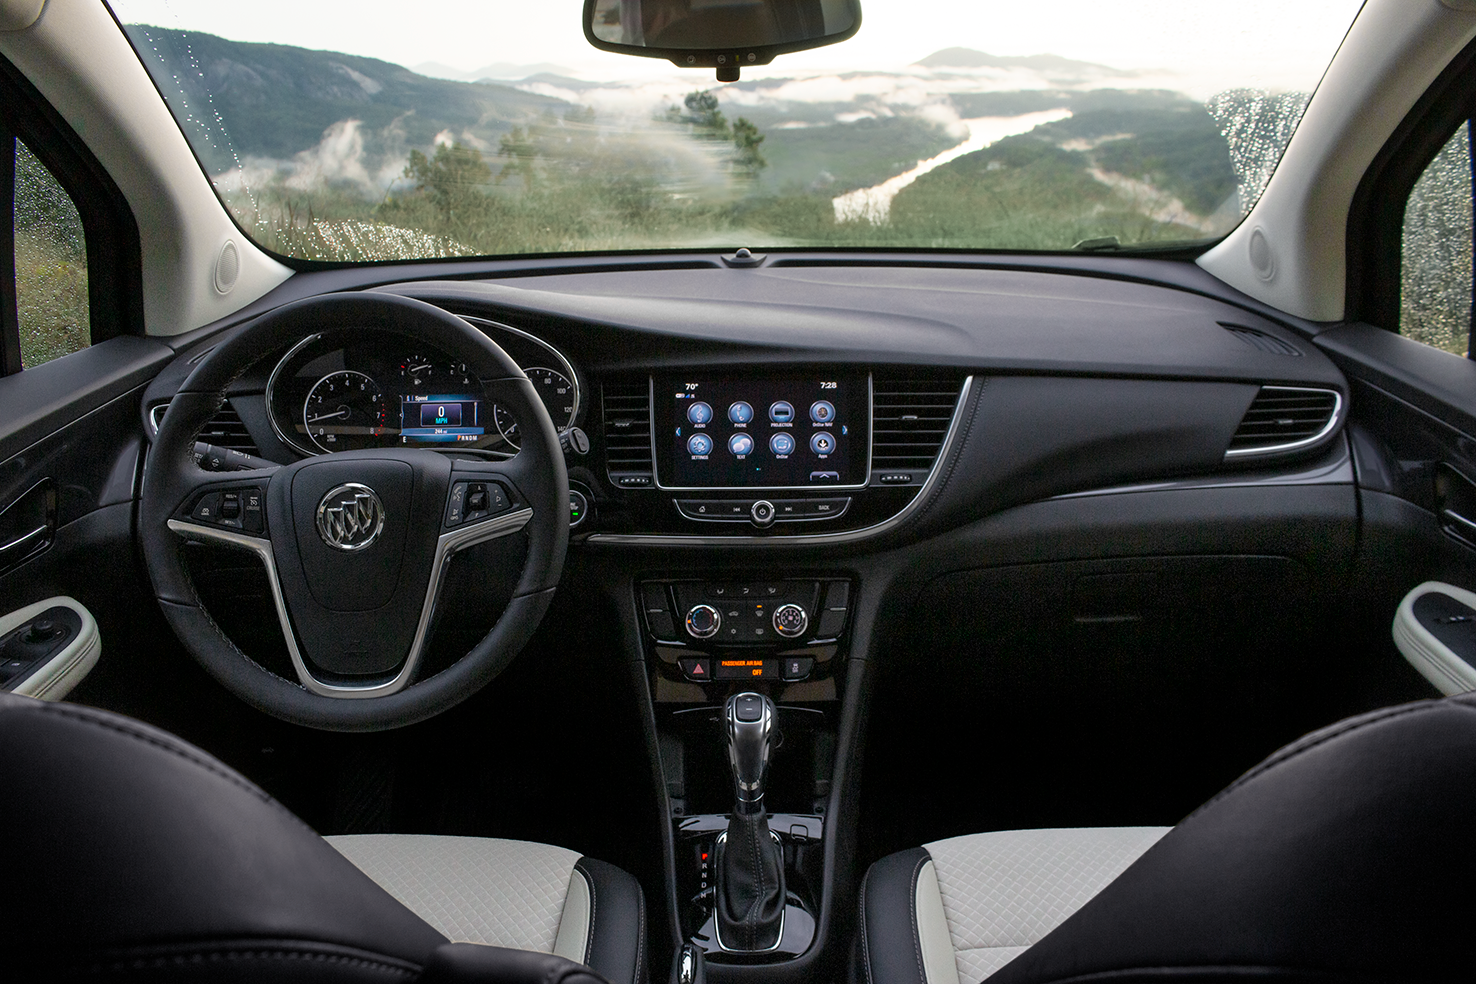 Pre-Owned Buick Encore Steering Wheel